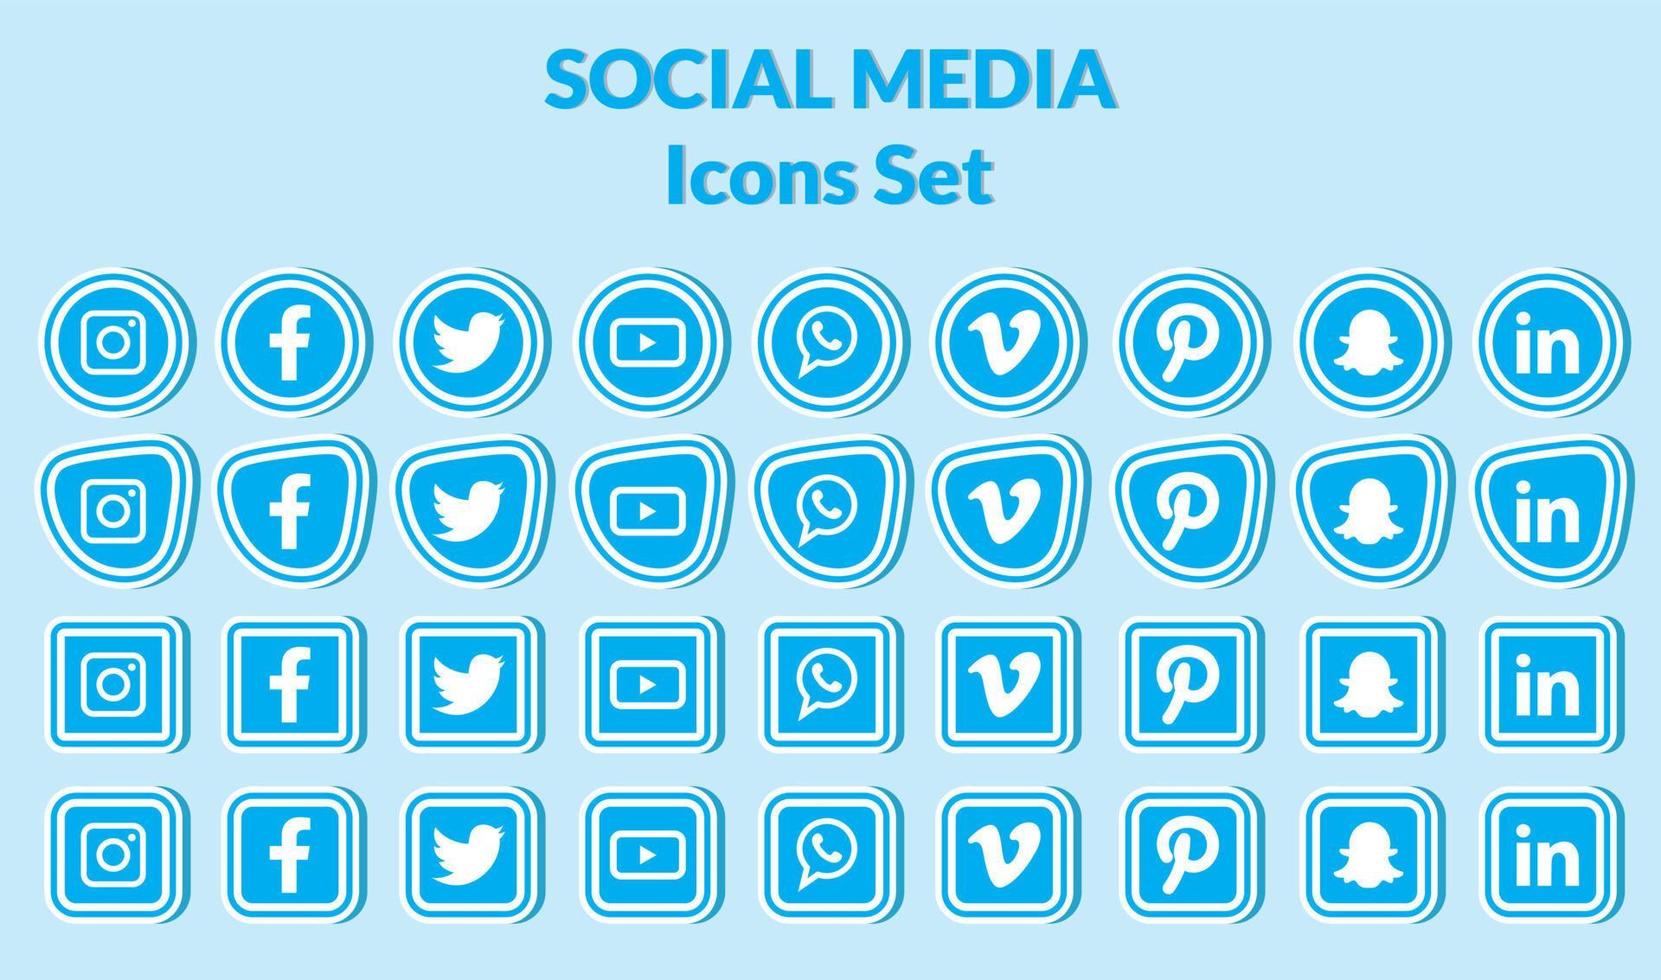 Popular social media icons set. vector